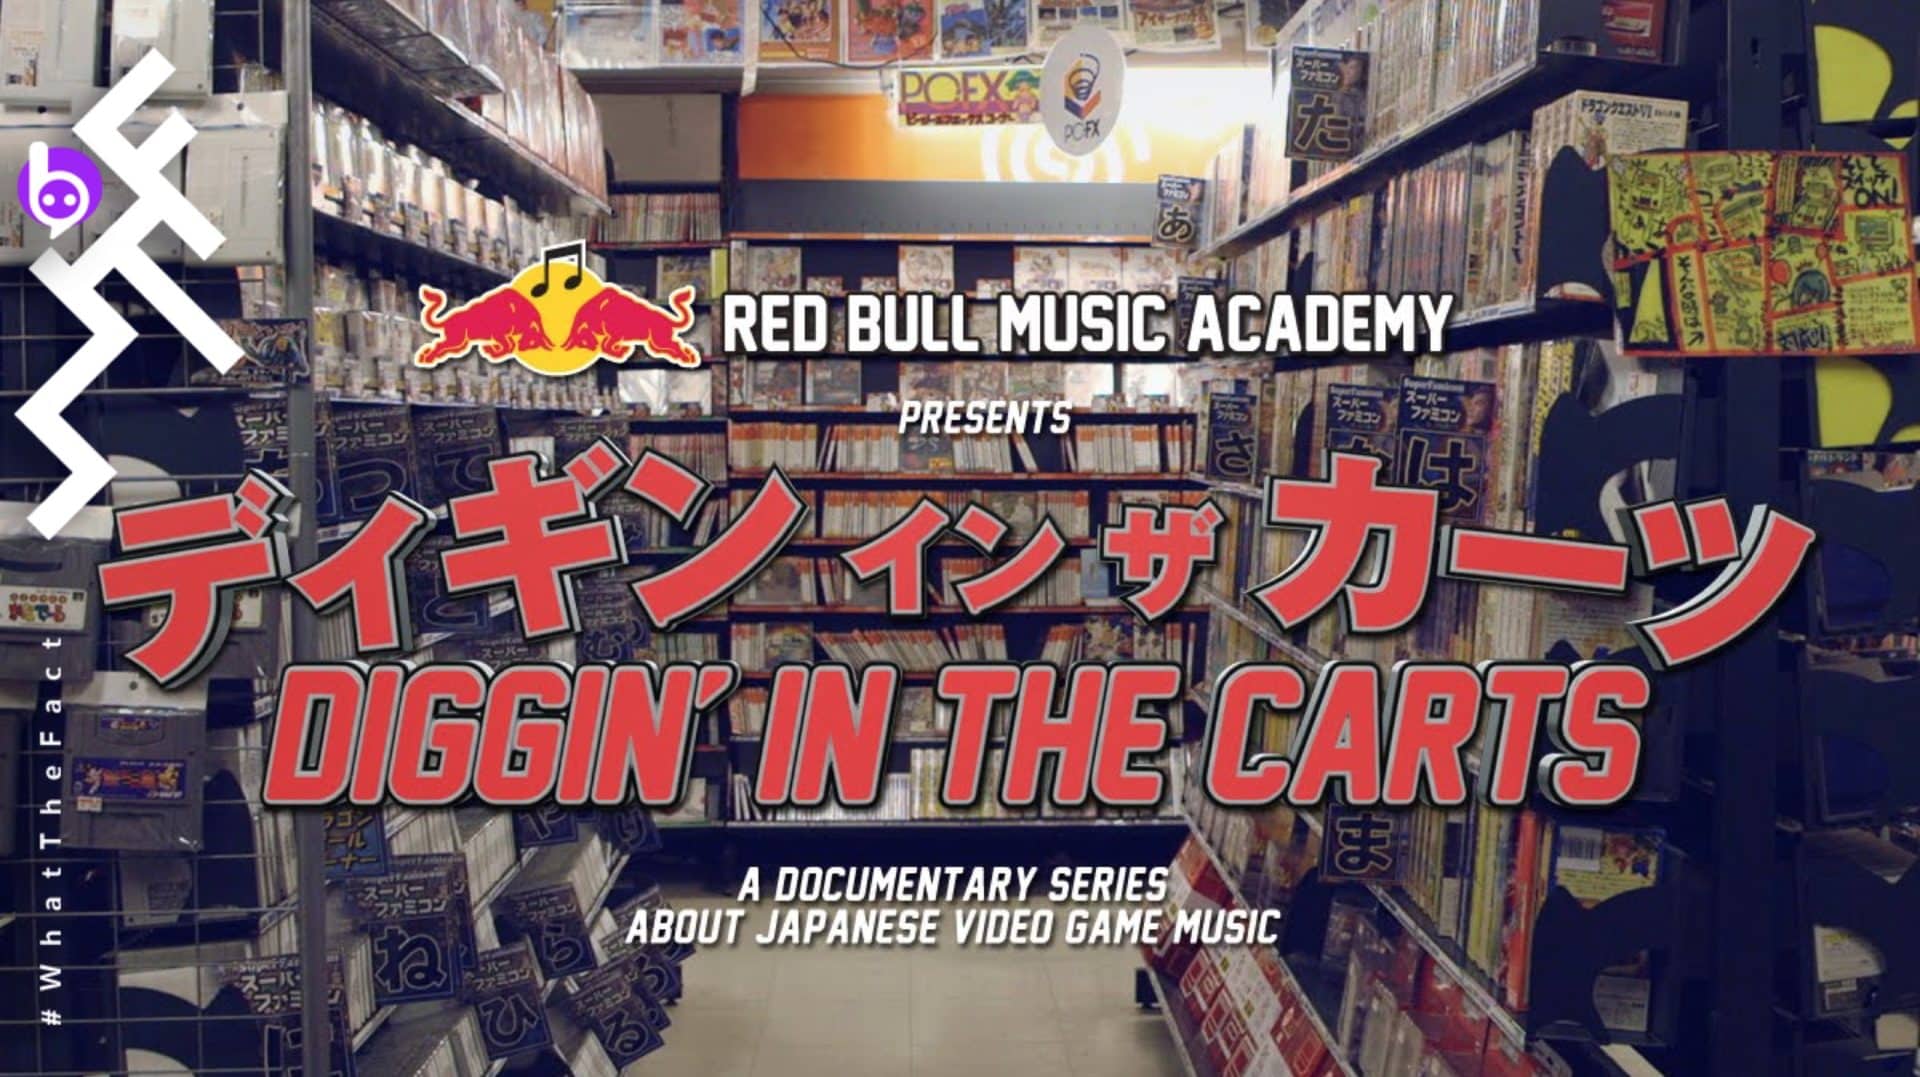 ท่องไปในโลกแห่งเสียงดนตรีประกอบวิดีโอเกมในสารคดีซีรีส์ ‘Diggin’ In the Carts’